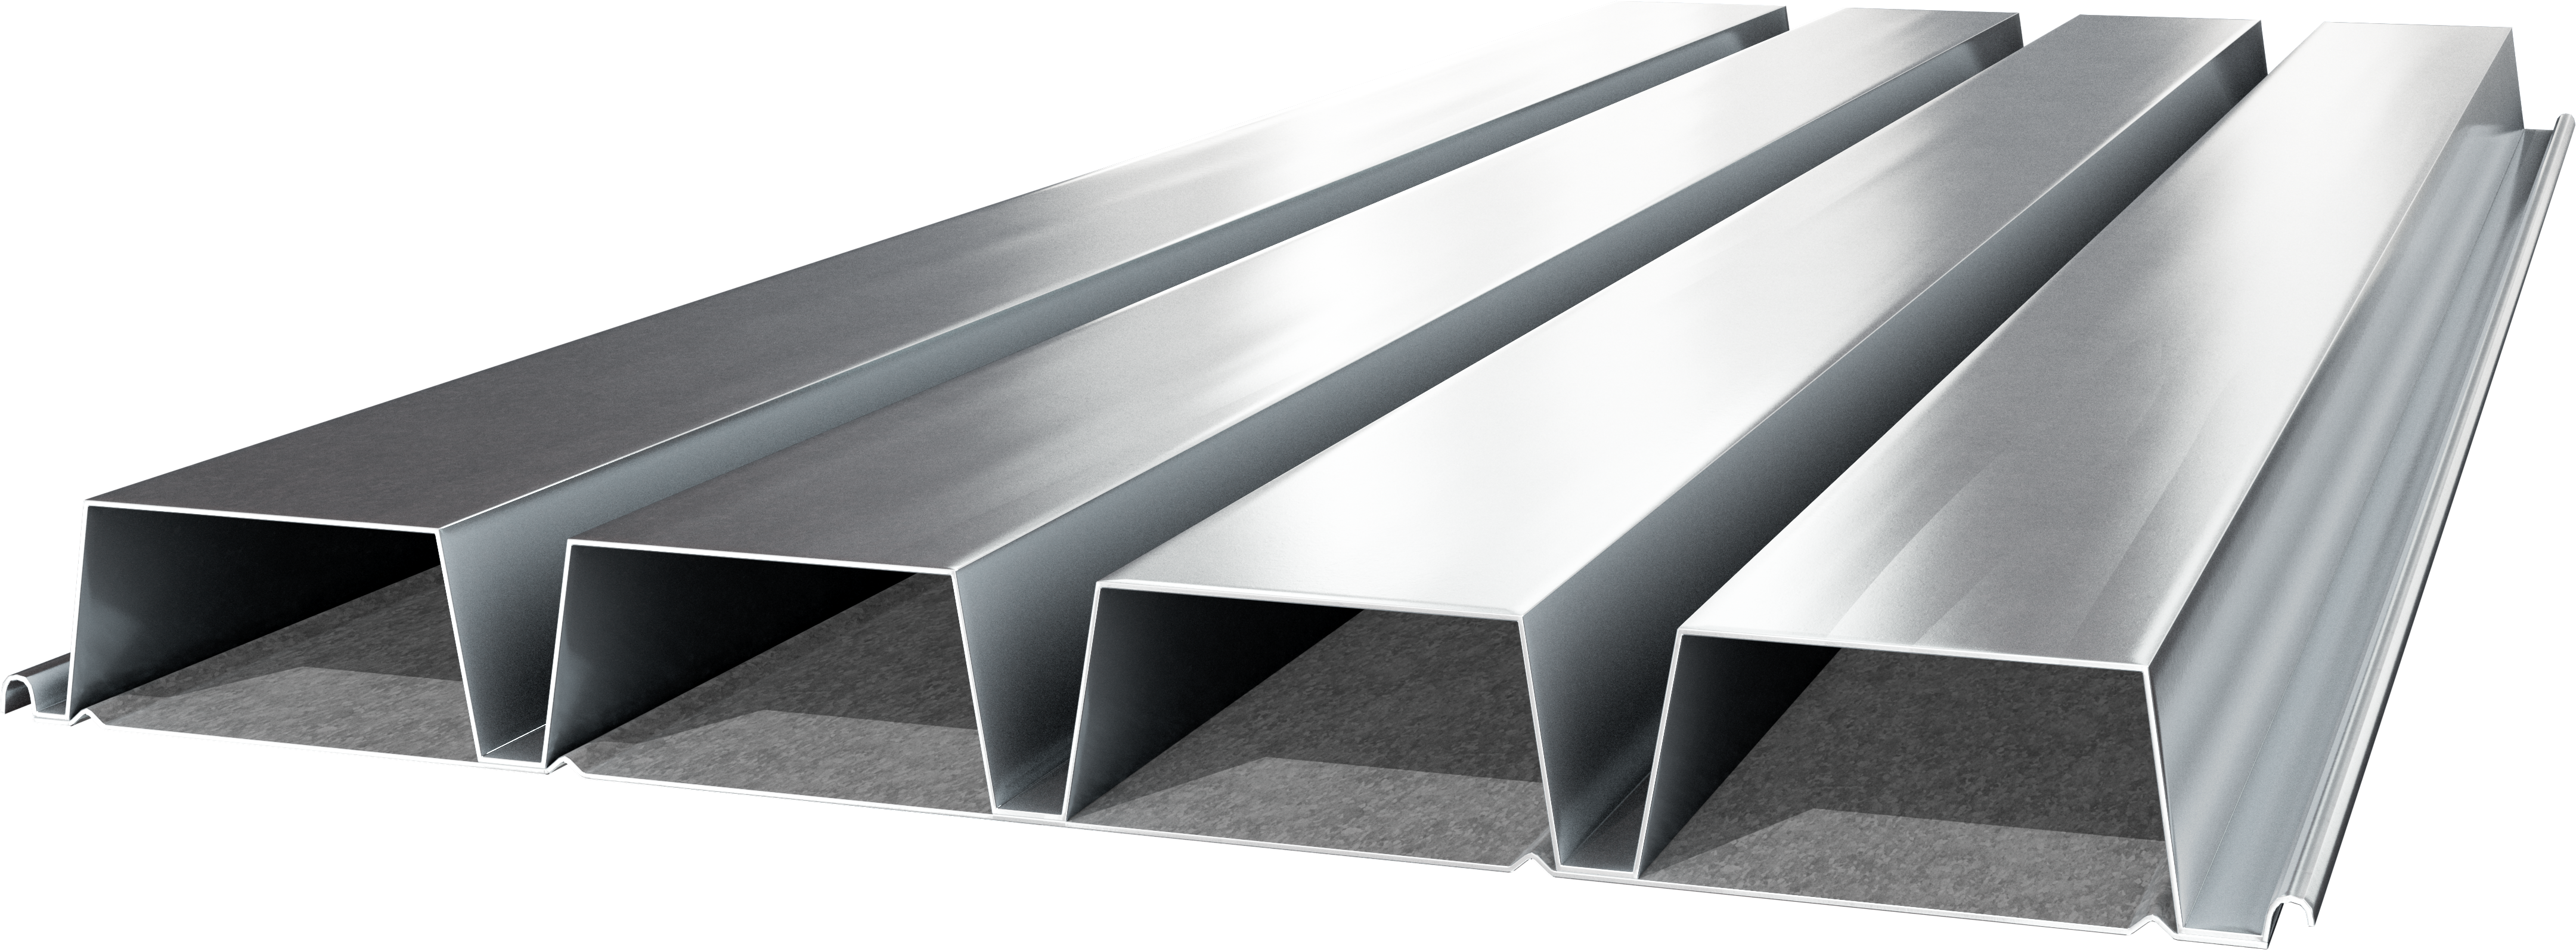 Metal 3.0 N Cellular Metal Roof Deck | Steel Decking | Cordeck